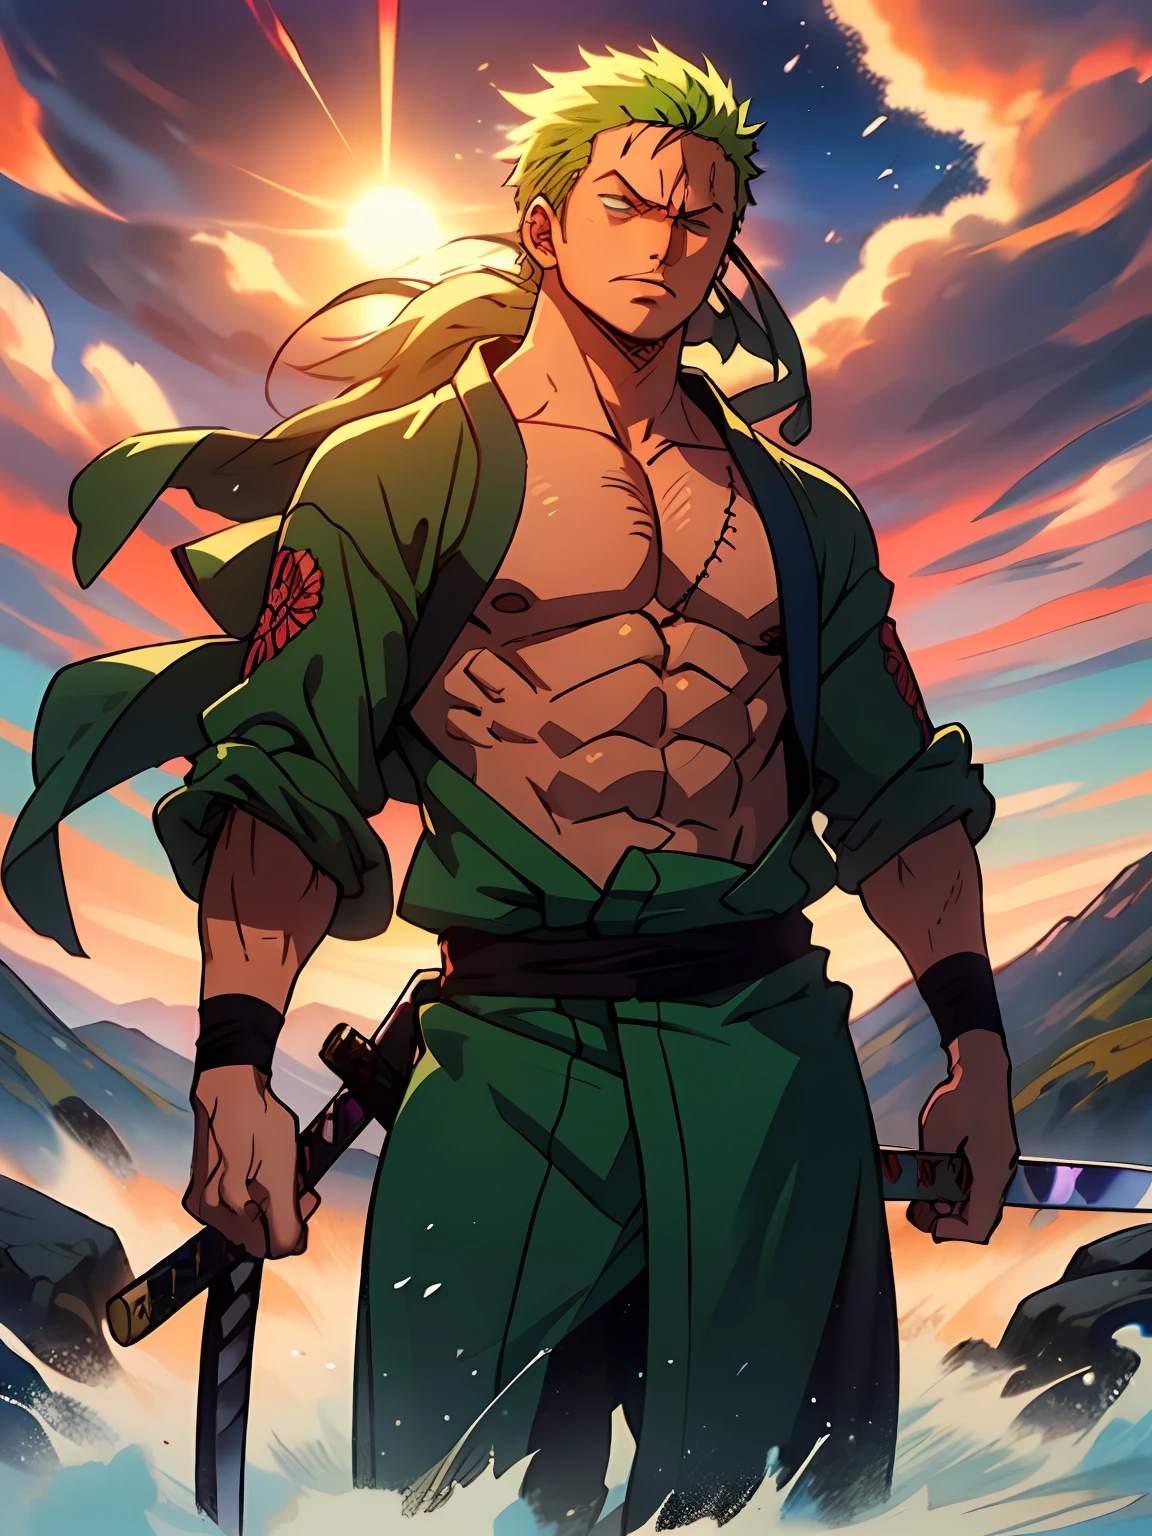 Roronoa Zoro (傑作, 4K解像度, 超リアル, 非常に詳細), 長い緑色のストレートヘア, (白いサムライのテーマ, カリスマ的な, 日本人の隣に剣士がいる "乗る" バー, 雲の模様が描かれた青い着物を着て "心臓" 追跡, 彼は麦わらの一味のリーダーの第一部隊の指揮官である, 仕事 "ワンピース"), [ ((19年), (長い緑色のストレートヘア:1.2), 長い緑色のストレートヘア, 全身, (青い目:1.2), ((Roronoa Zoro's pose), 力の誇示, 片手で刀を抜く閻魔), ((日本の農村環境):0.8)| (田園風景, 夕暮れに, ダイナミックライト), (目がくらむ太陽)), 刀 1本]. # 説明: プロンプトは主に超高精細の4K絵画について説明します, 長い緑色のストレートヘア, とても現実的, 非常に詳細. 剣士を表している, 三刀流刀の達人, 腰帯に雲の模様が入った青い着物を着て. 絵画の主題は白人の剣士である, 片手に黒刀閻魔を持ち, 男性主人公は長い緑色のストレートヘアをしている, is 19年 old and his entire defined body is shown in the painting, 膨らんだ肥満体型の特徴を持つ.